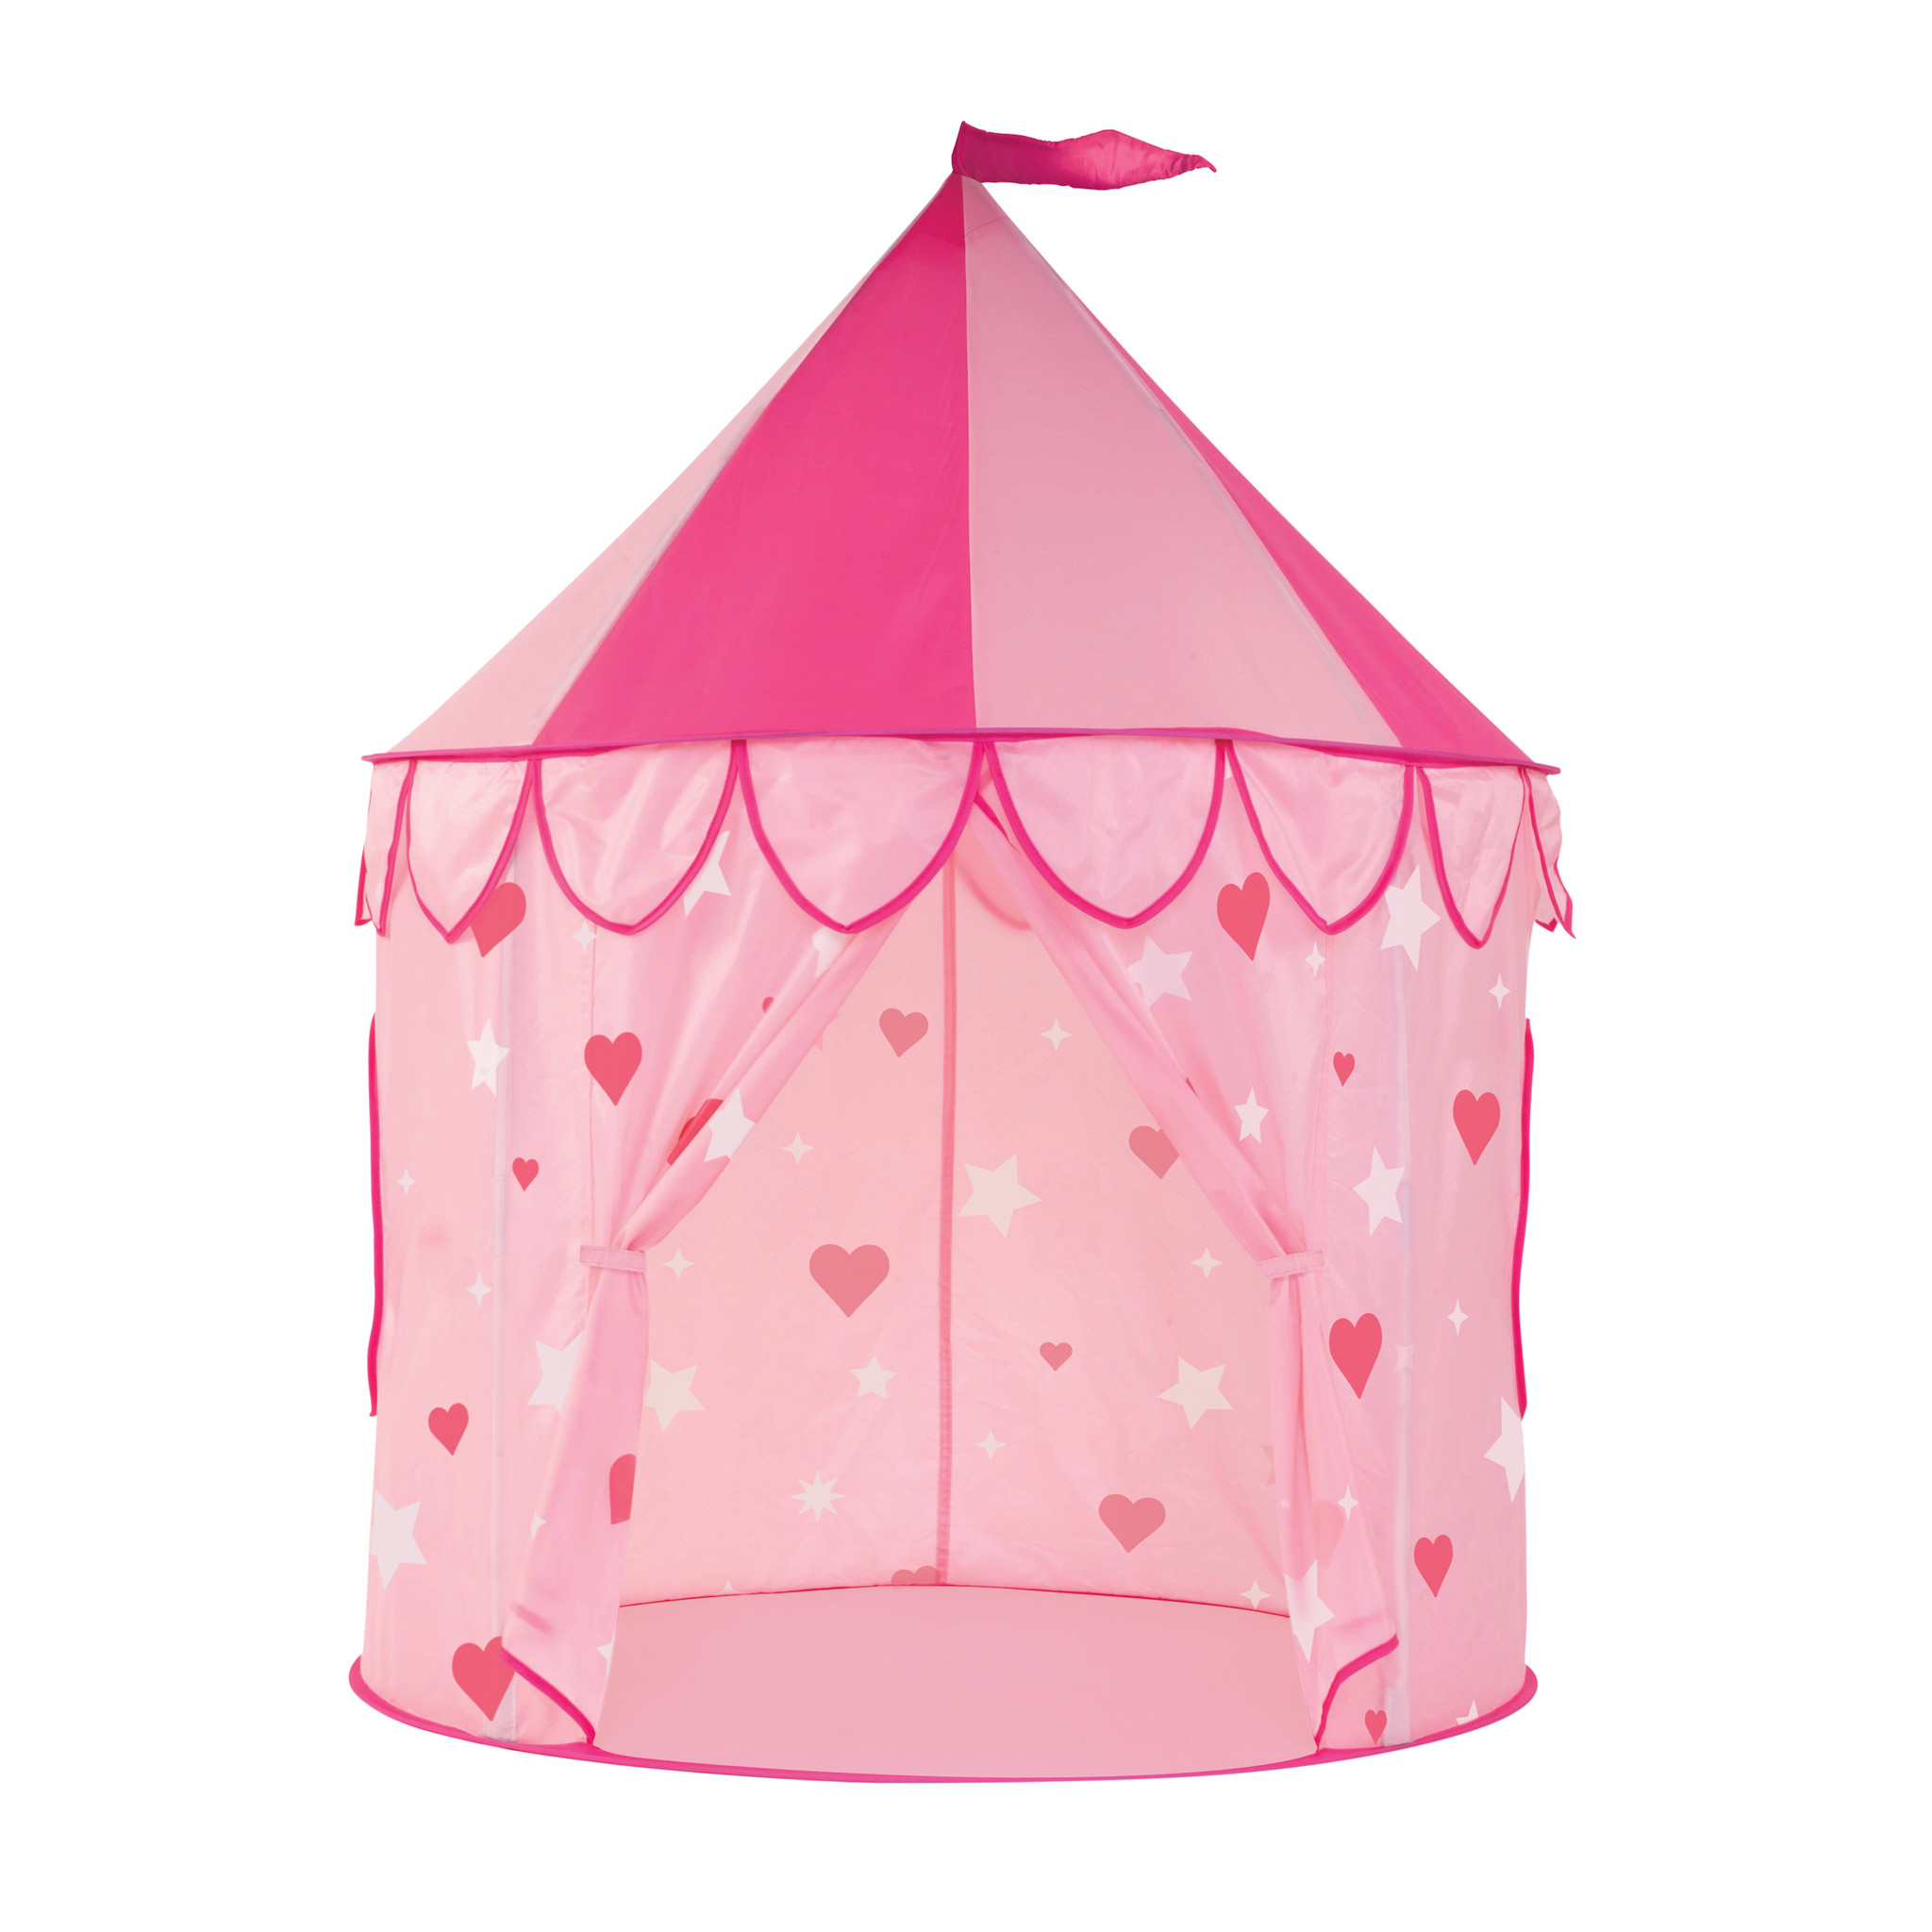 Authenticatie verlies Afdrukken Castle Pop-Up Kids Play Tent